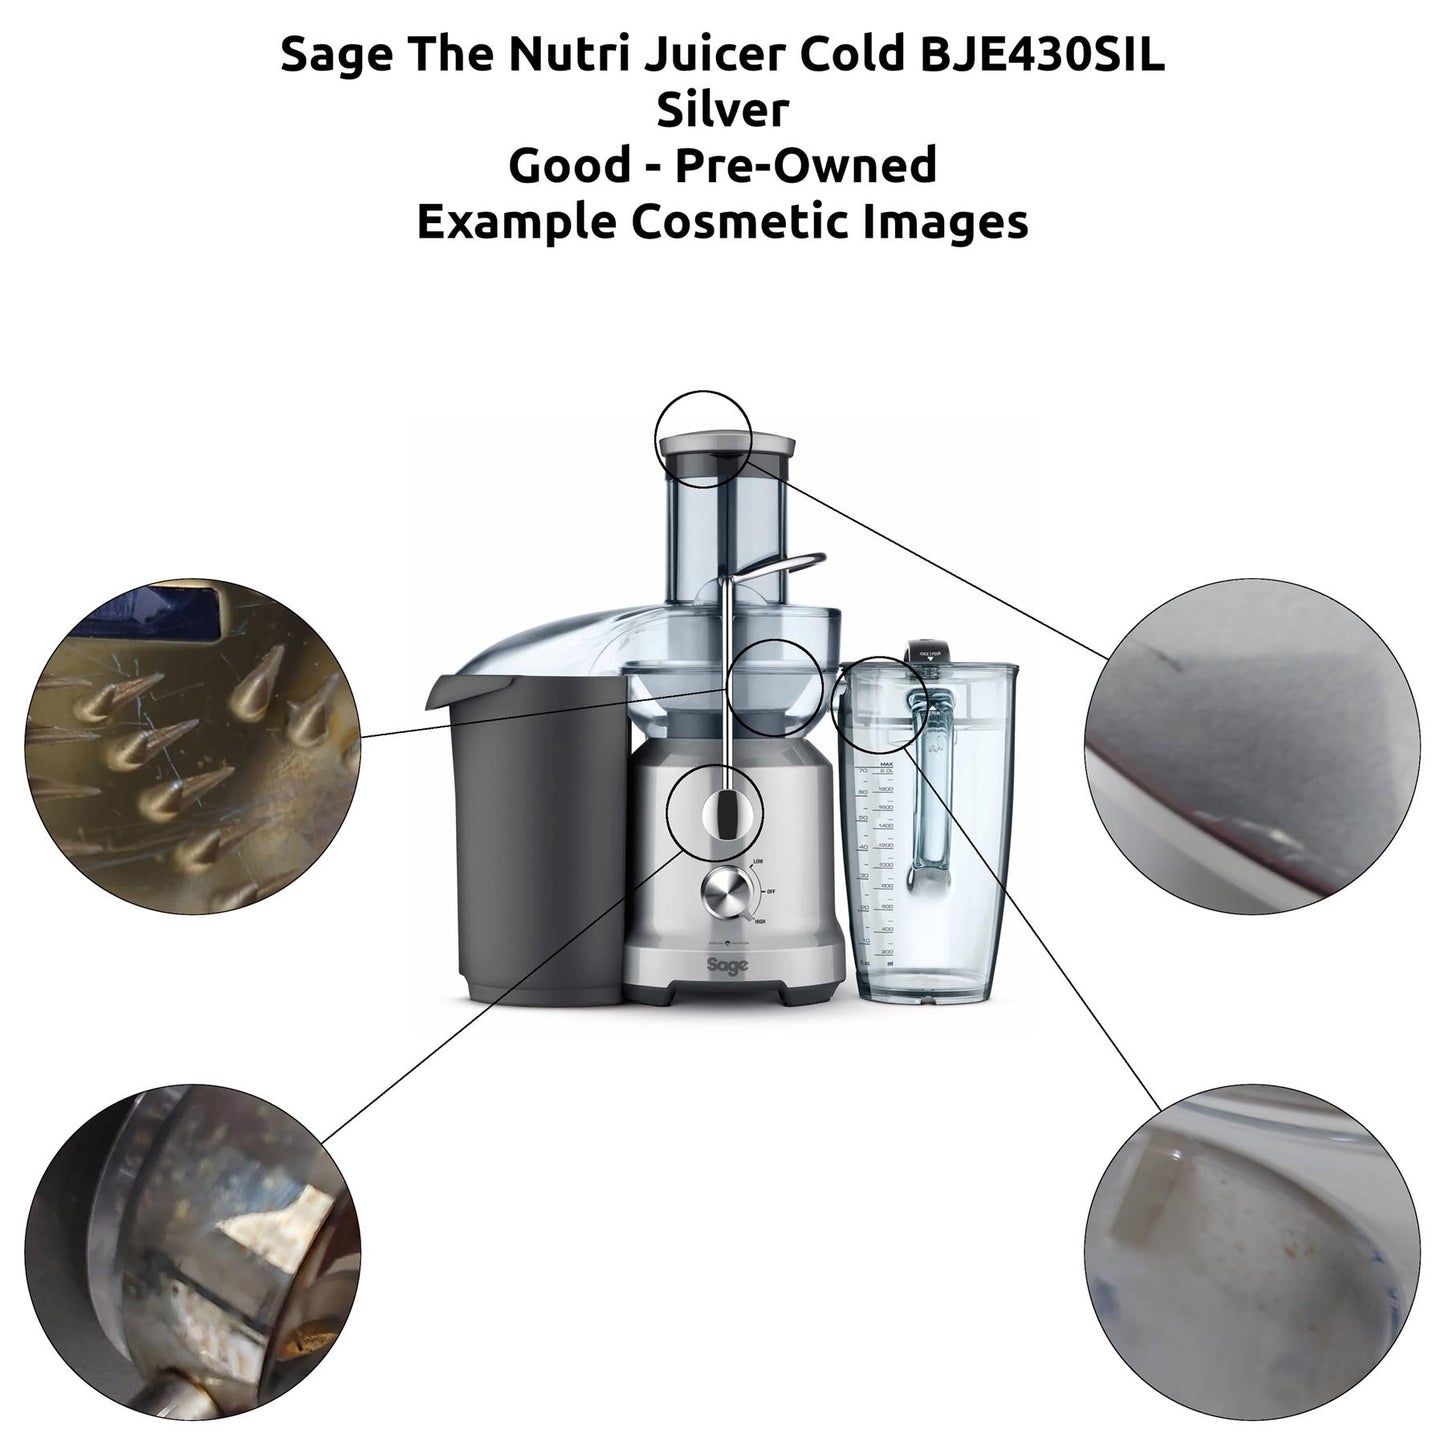 Sage The Nutri Juicer Cold BJE430 Fruit Juicer